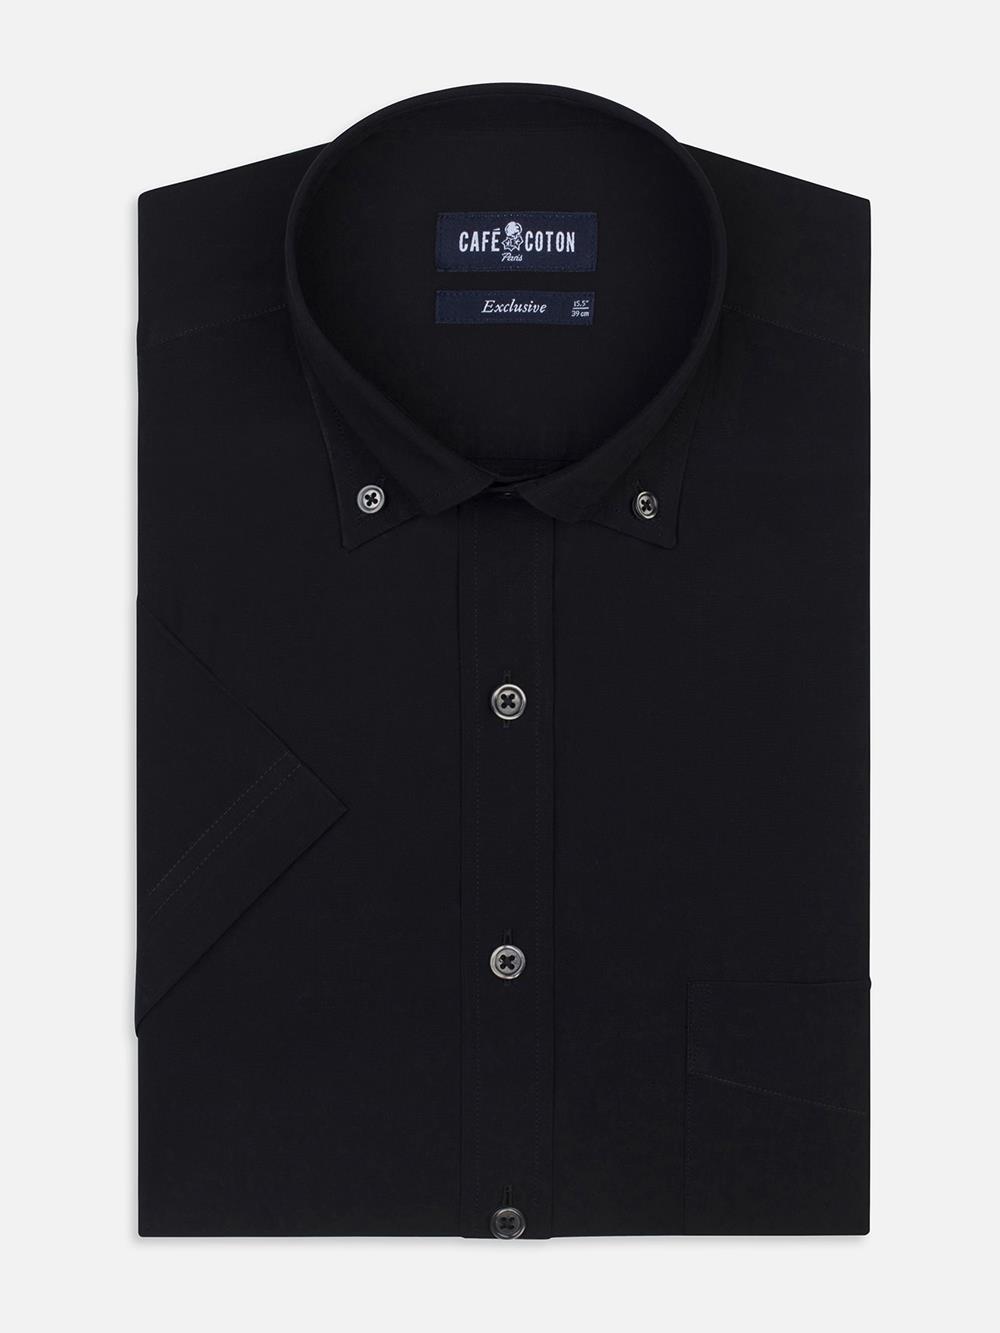 Black poplin shirt - Short Sleeves